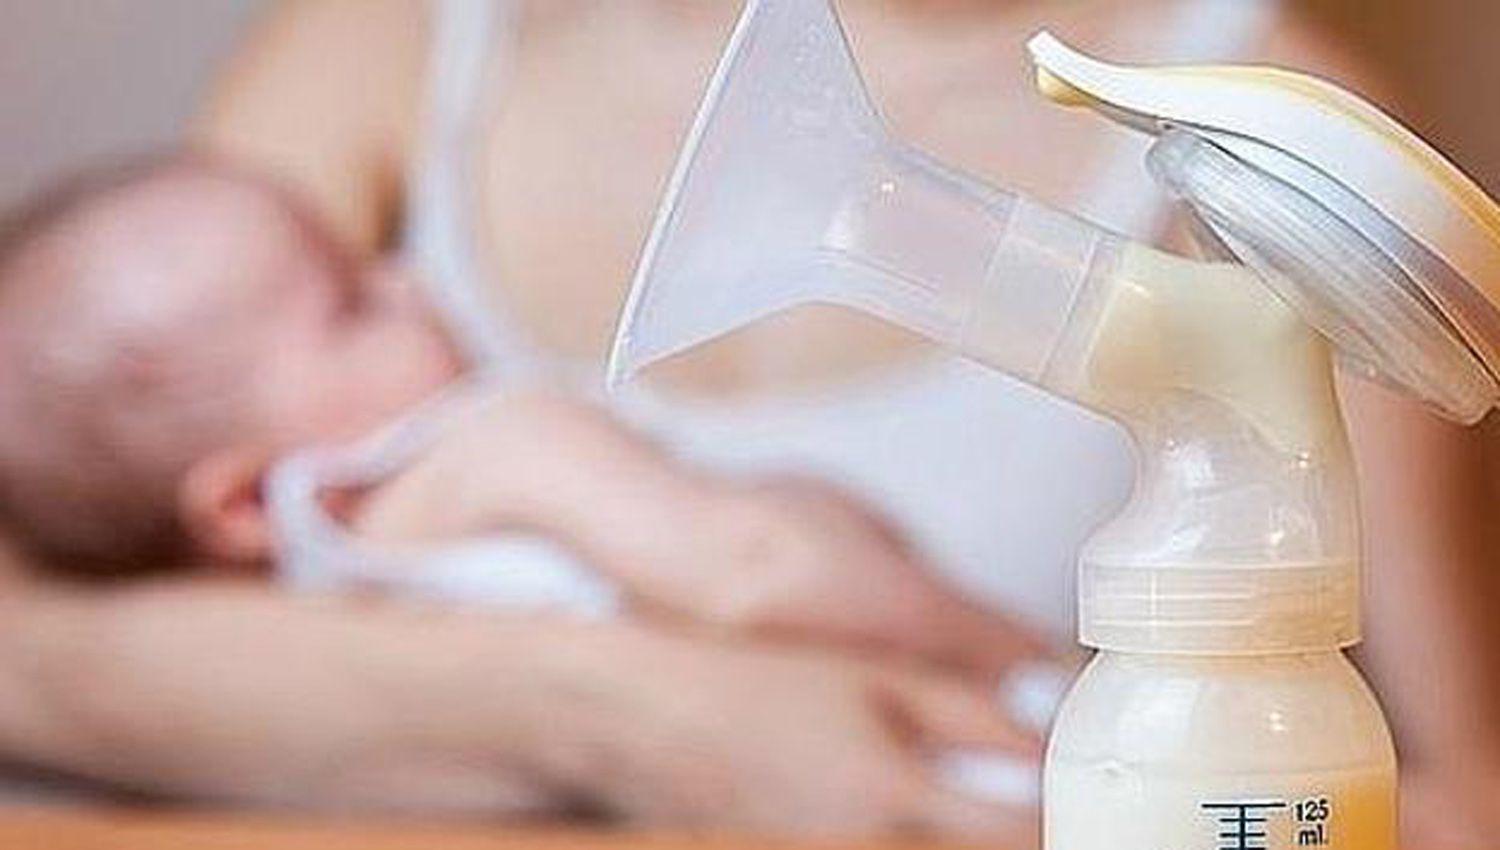 Coronavirus- cientiacuteficos sostienen que la leche materna de mujeres infectadas transmite anticuerpos